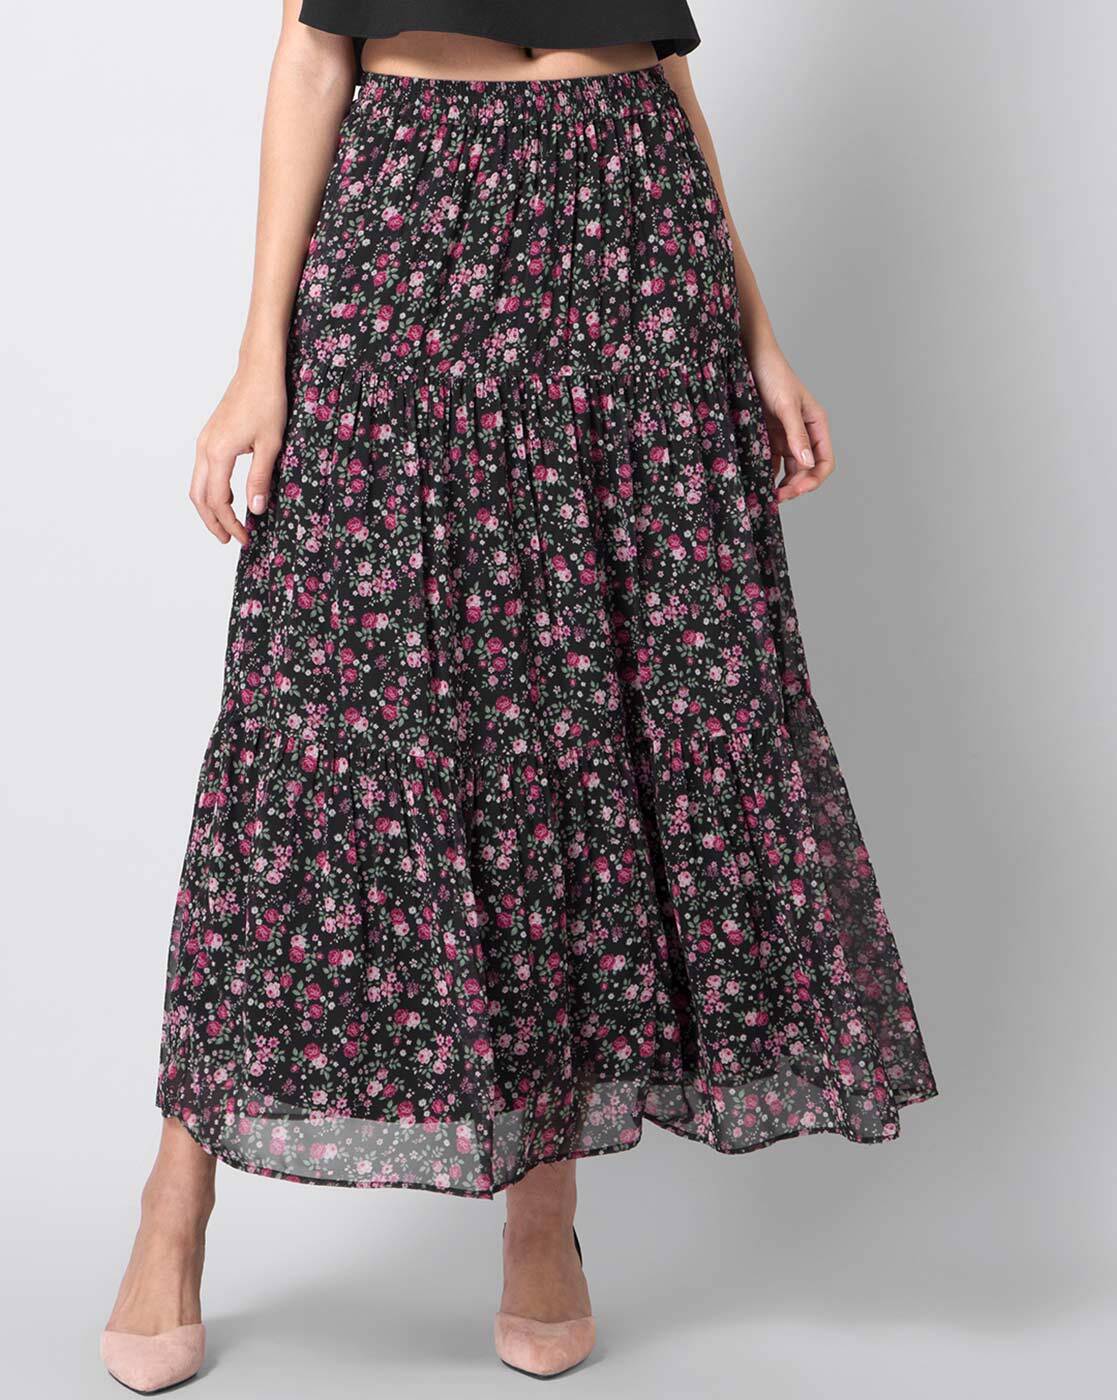 Women Skirts  Buy Formal Skirts Long Skirts for Women  Girls Online in  India  FabAlley